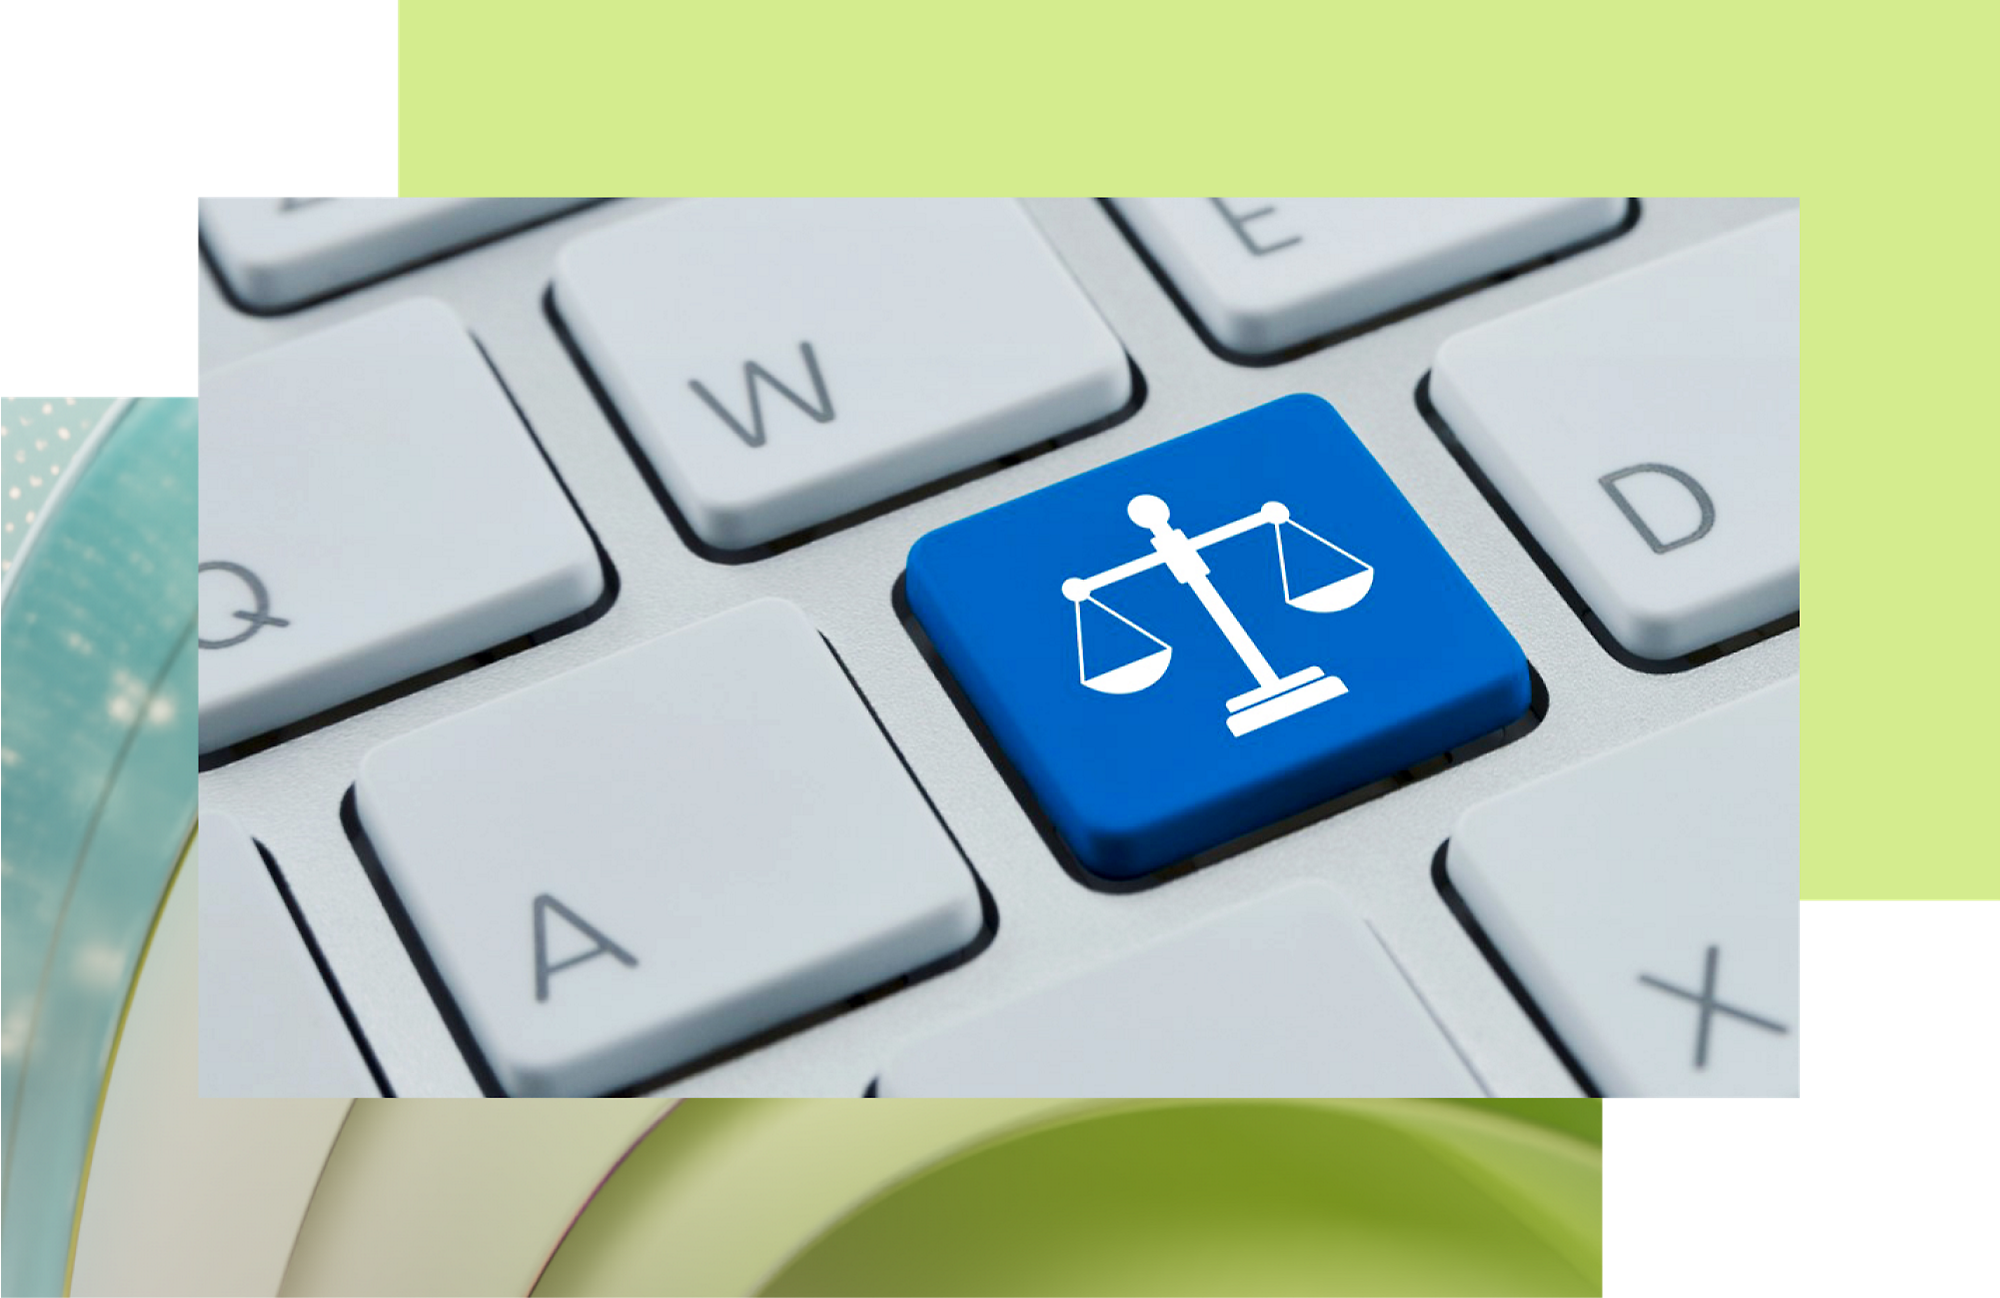 Niebieski klawisz z białą ikoną wagi wymiaru sprawiedliwości na klawiaturze, symbolizującą pomoc prawną lub technologię skoncentrowaną na wymiarze sprawiedliwości.